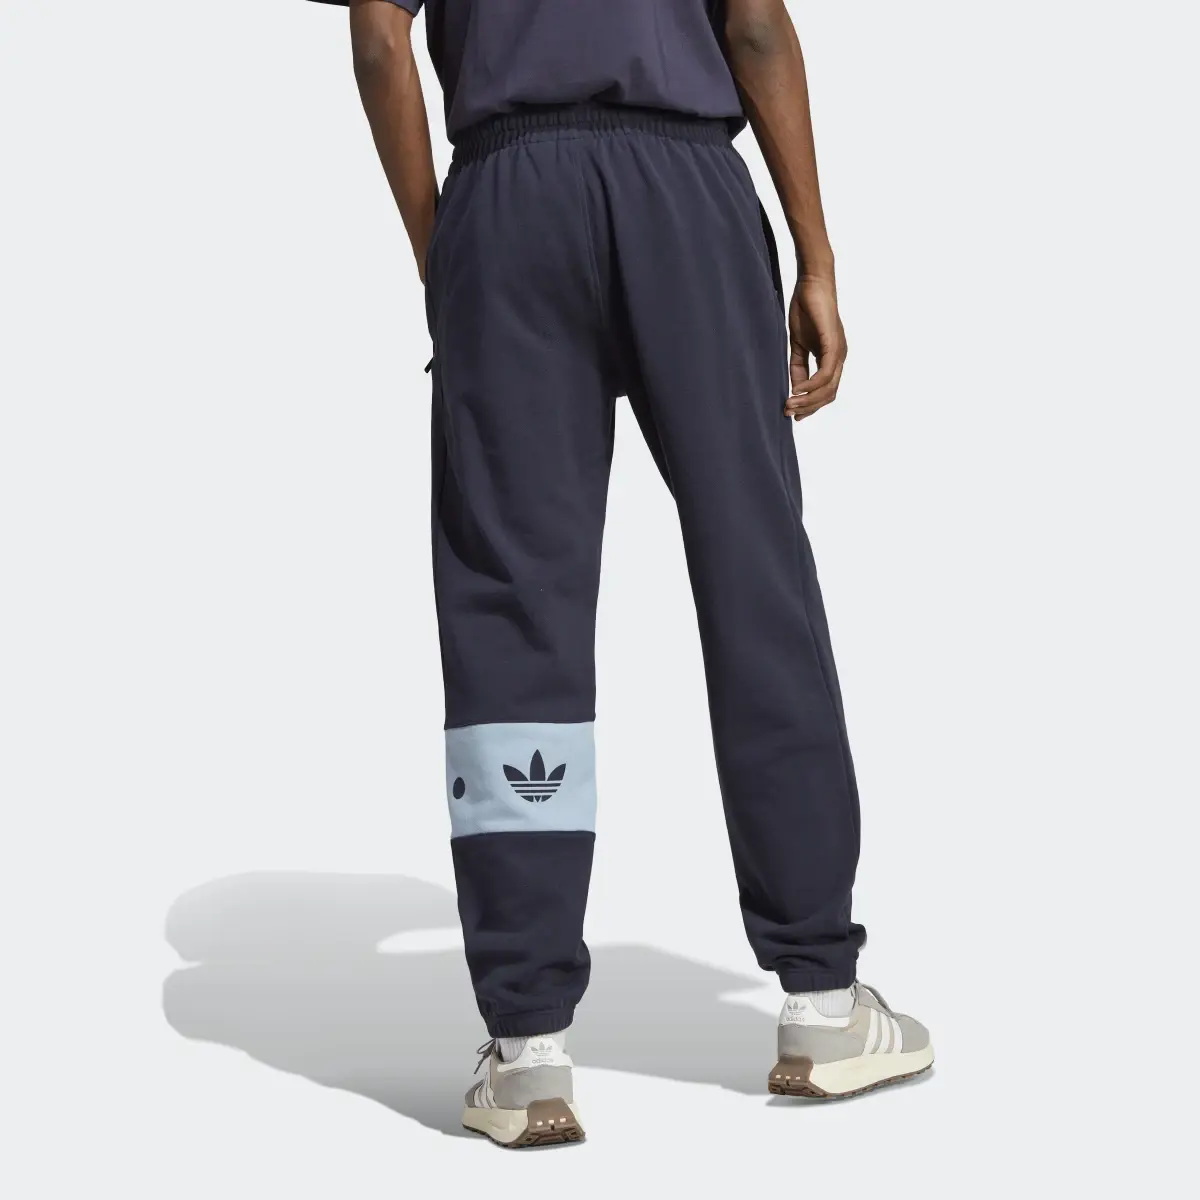 Adidas Pants RIFTA City Boy. 3